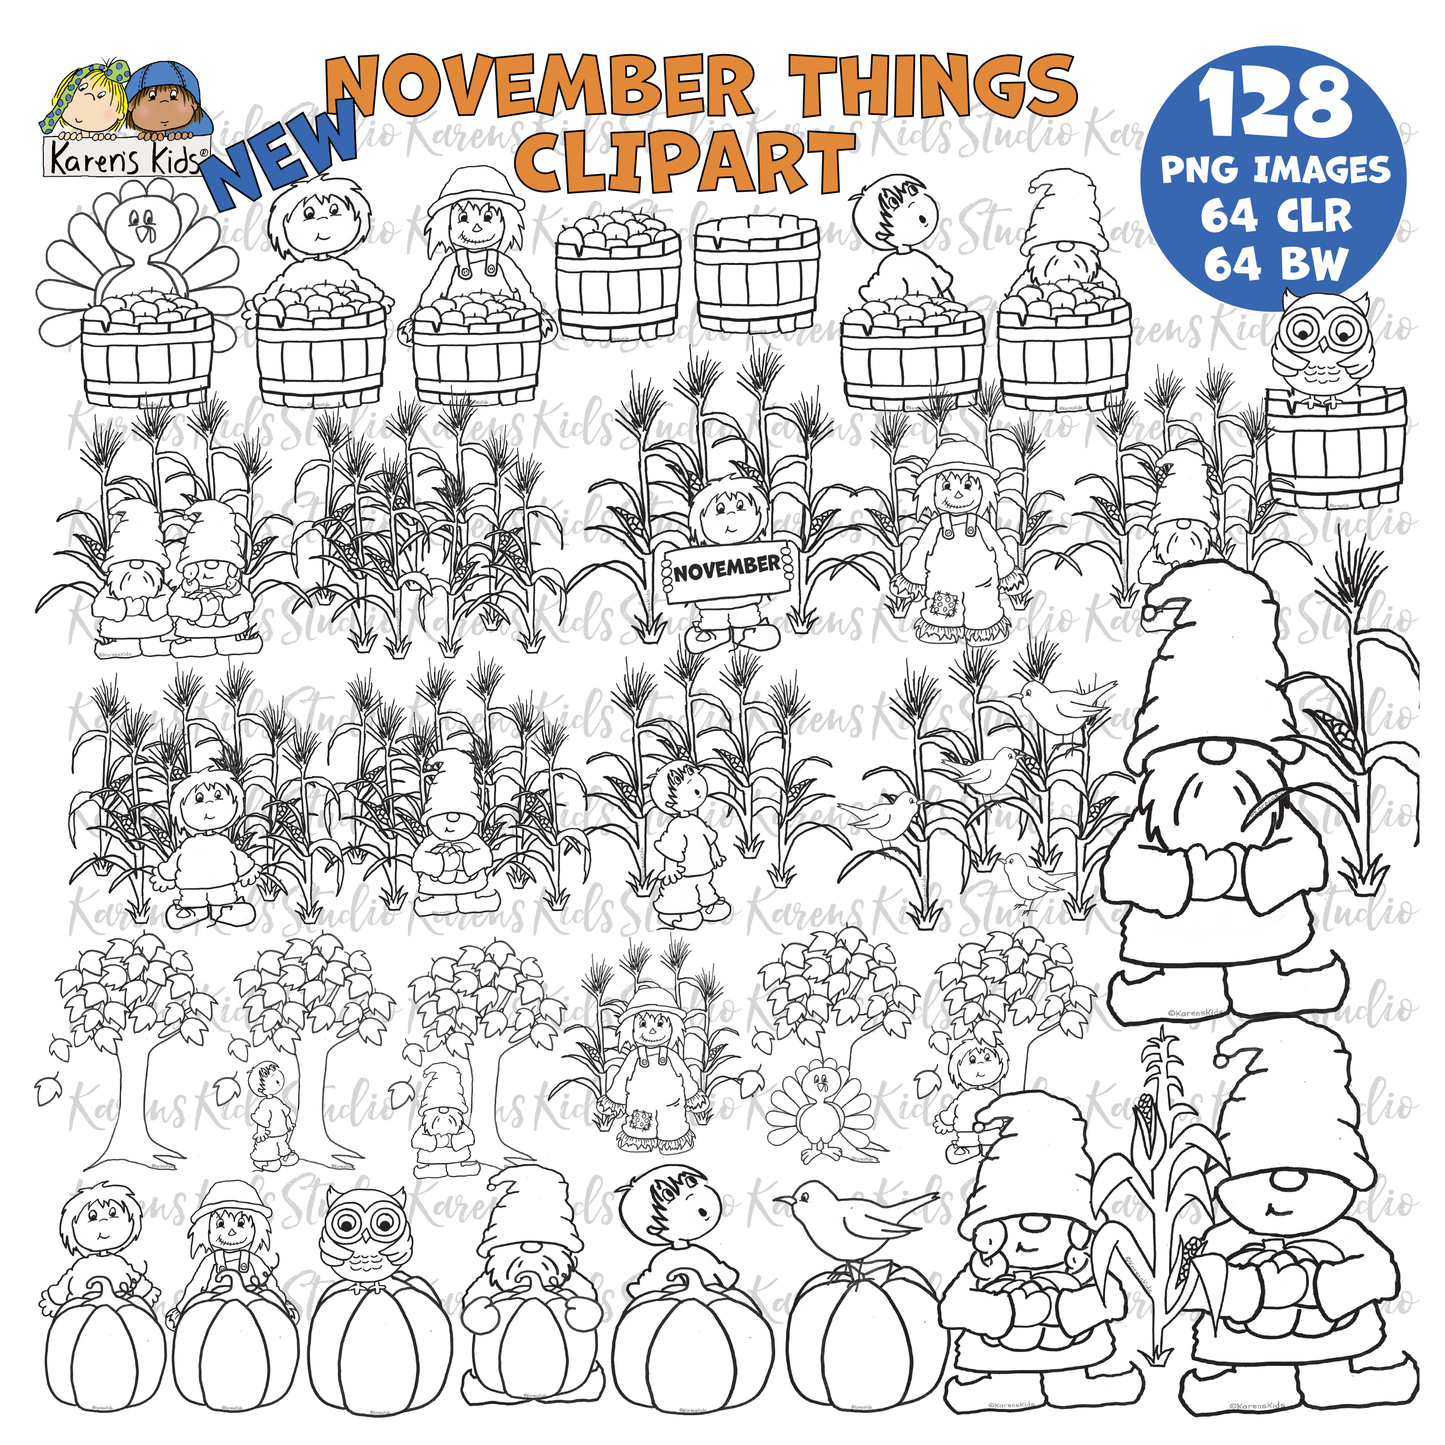 November Things Clipart (Karen's Kids Clipart)